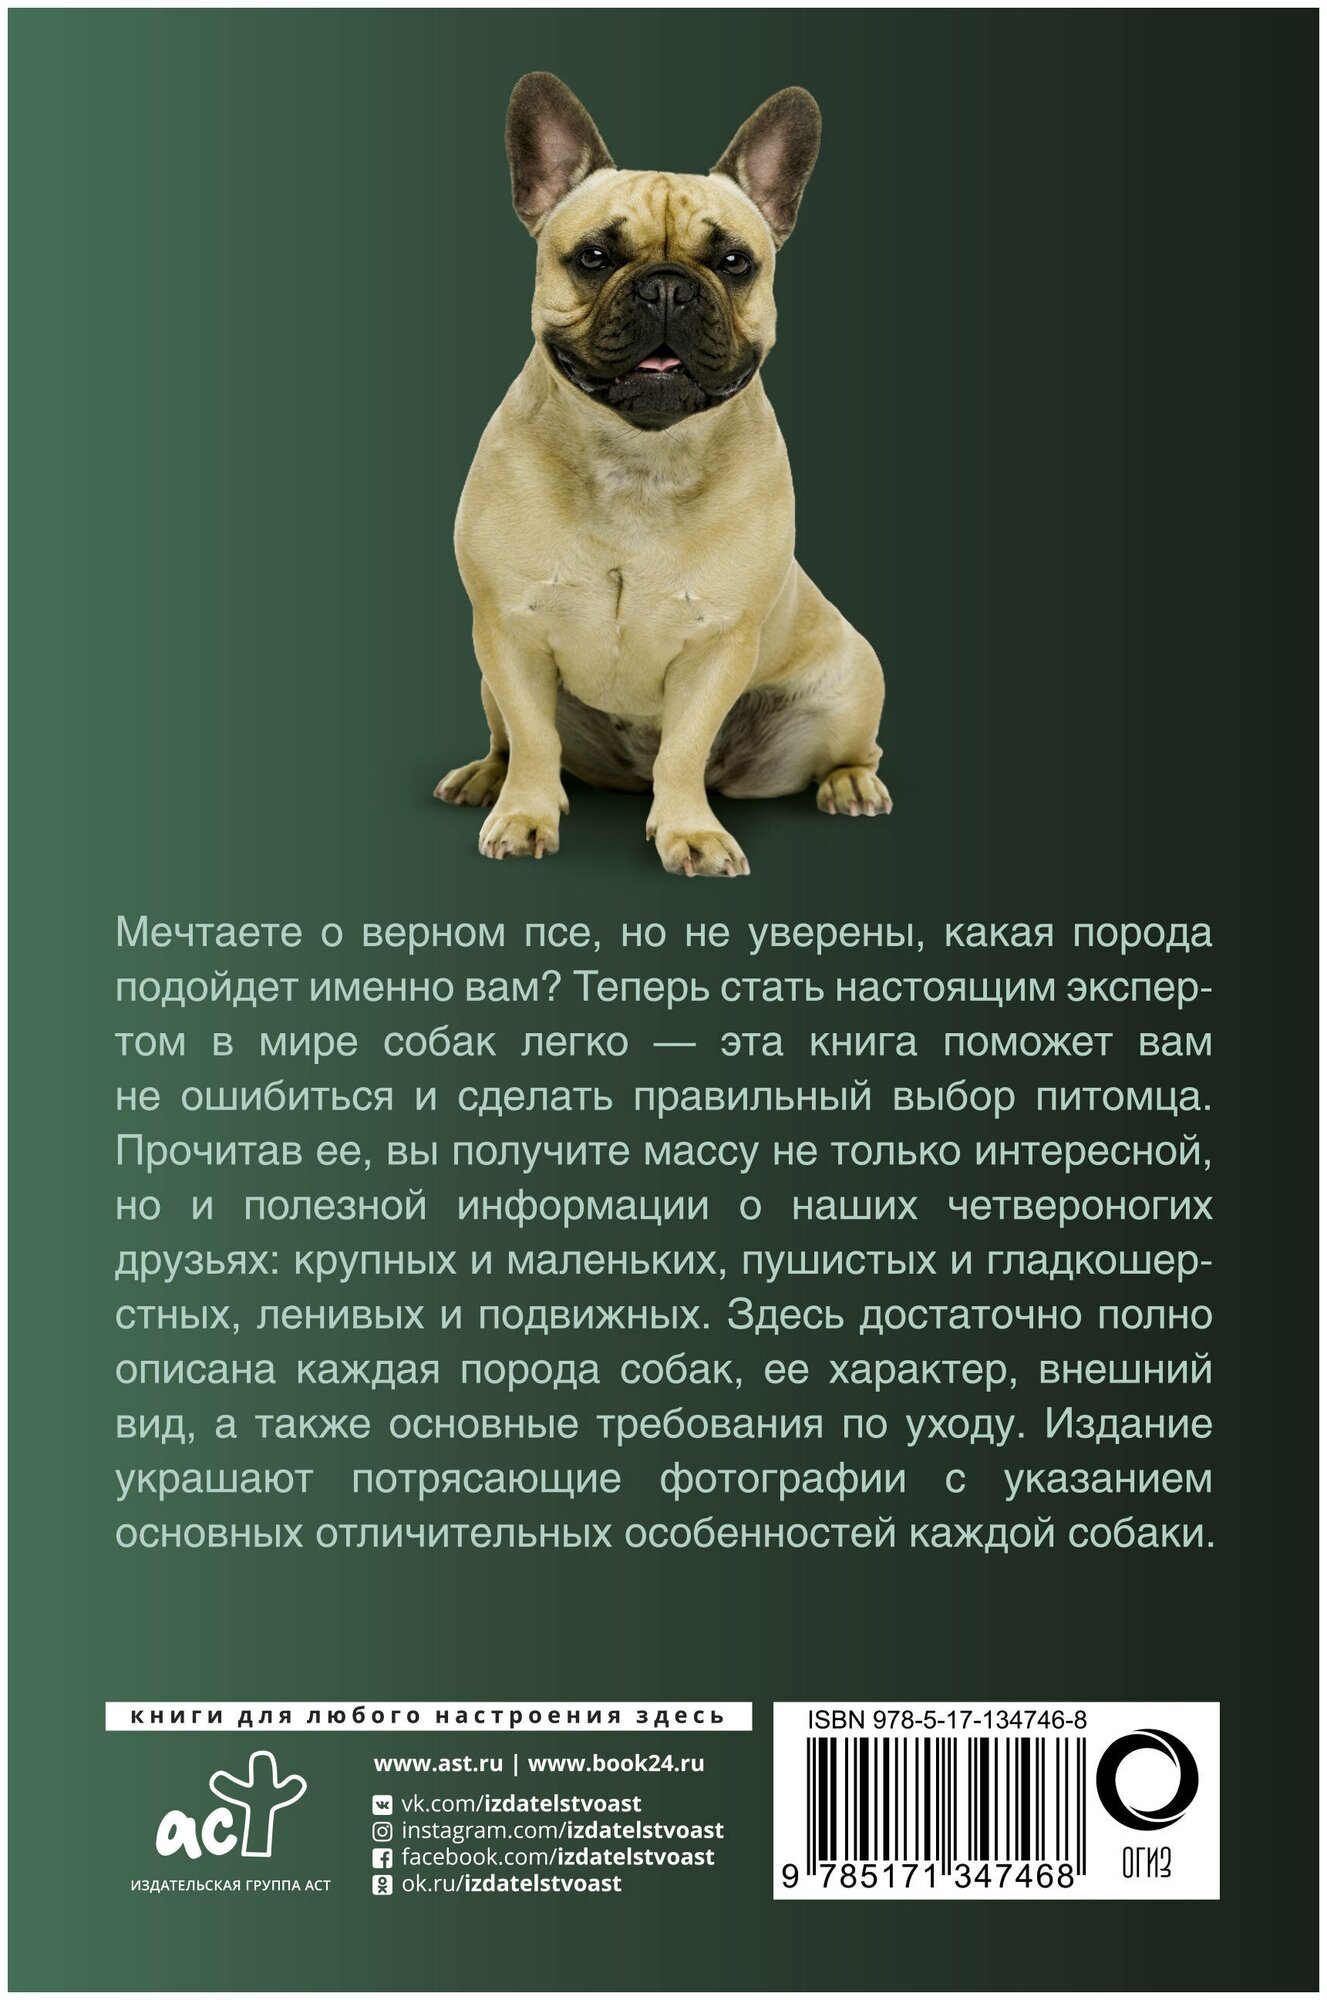 Собаки. Популярный иллюстрированный гид - фото №2